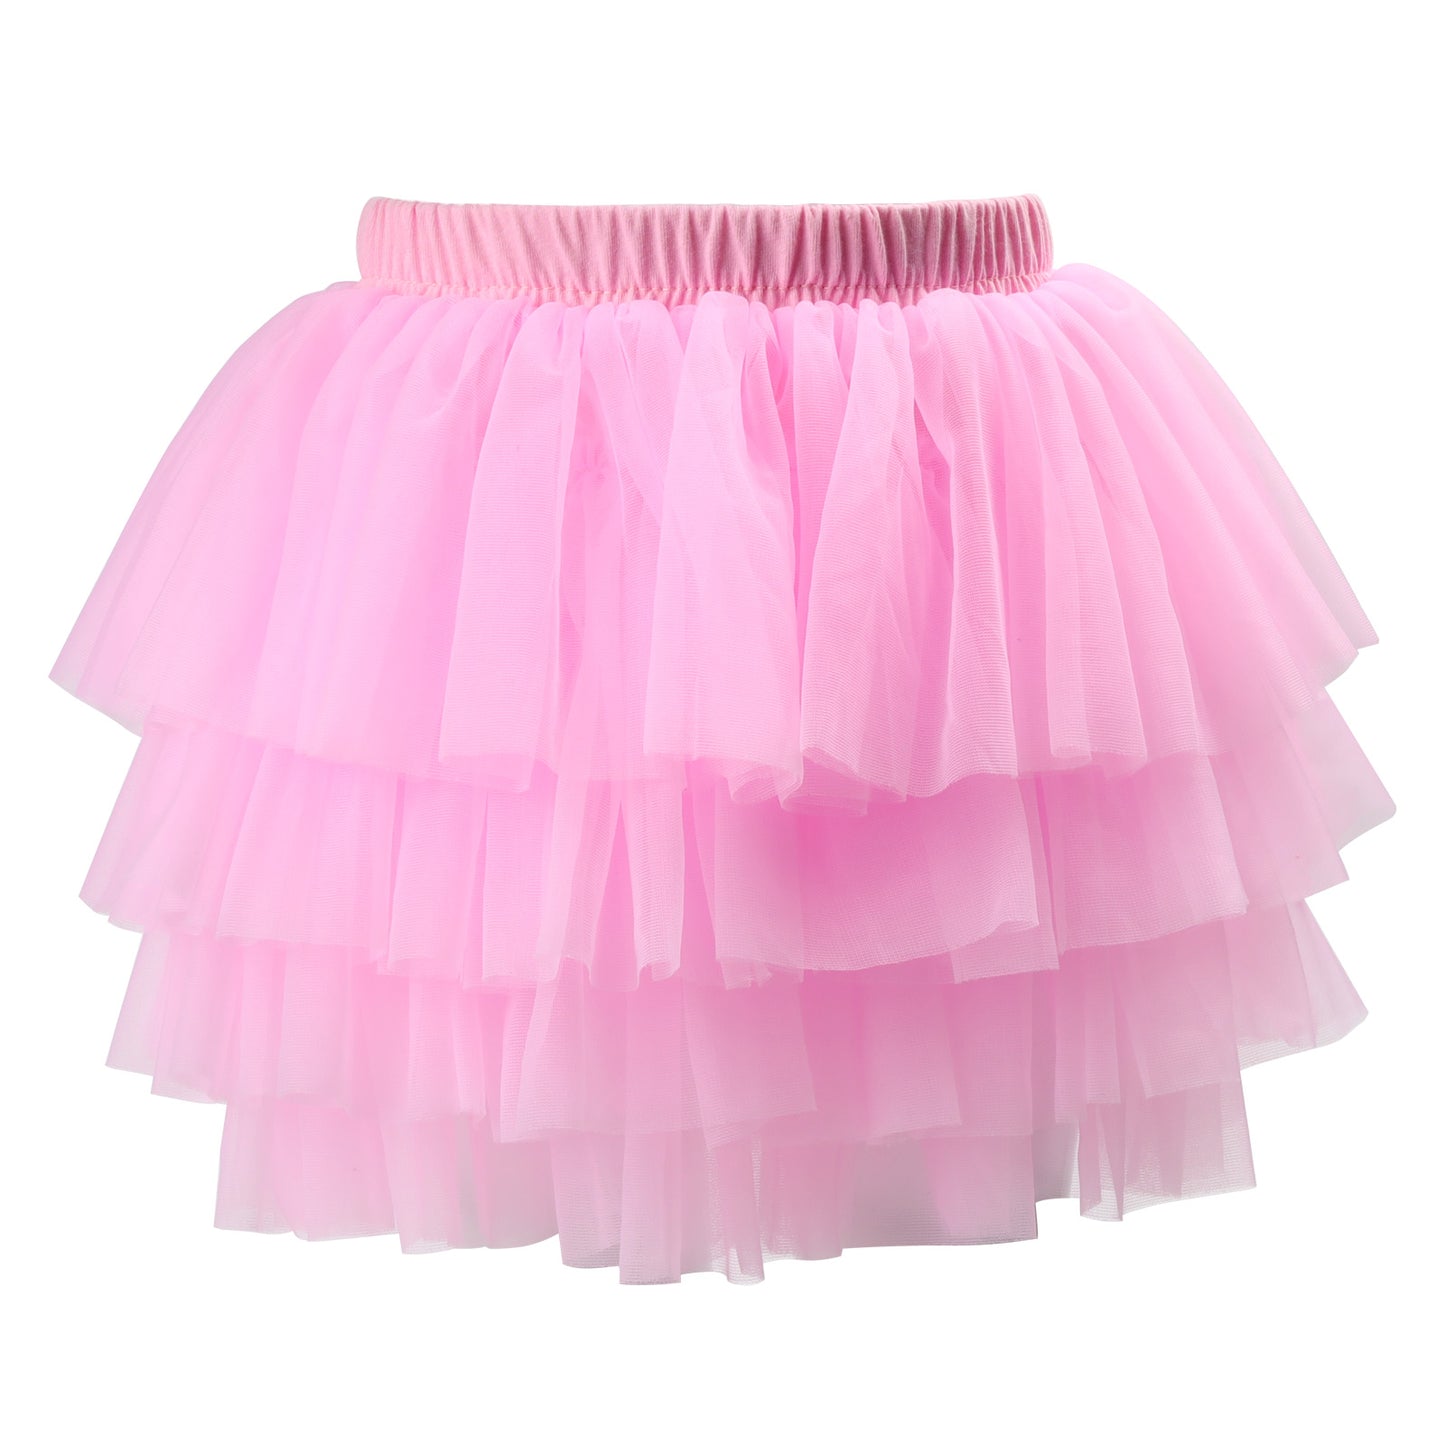 Baby Toddler Girls 2-6T Soft Fluffy Tutu Skirt